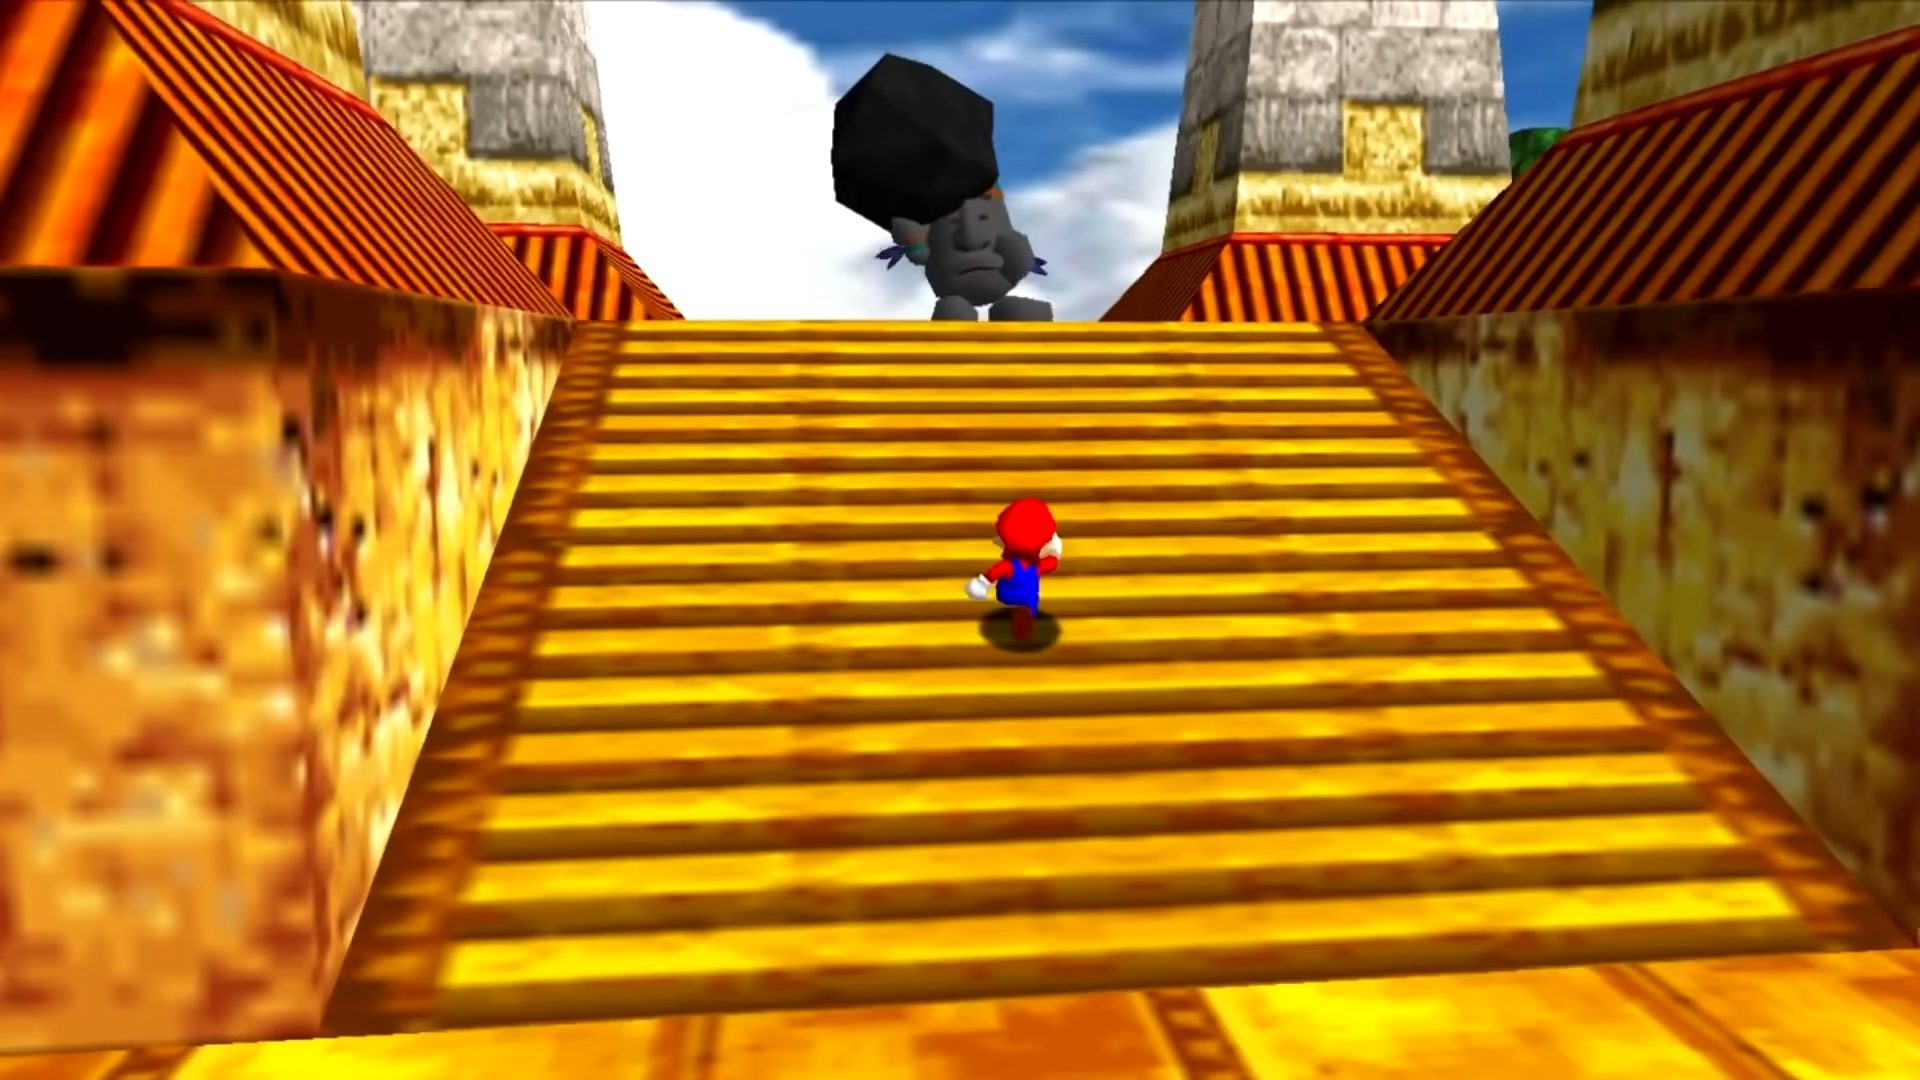 Super Mario 64: Through the Ages